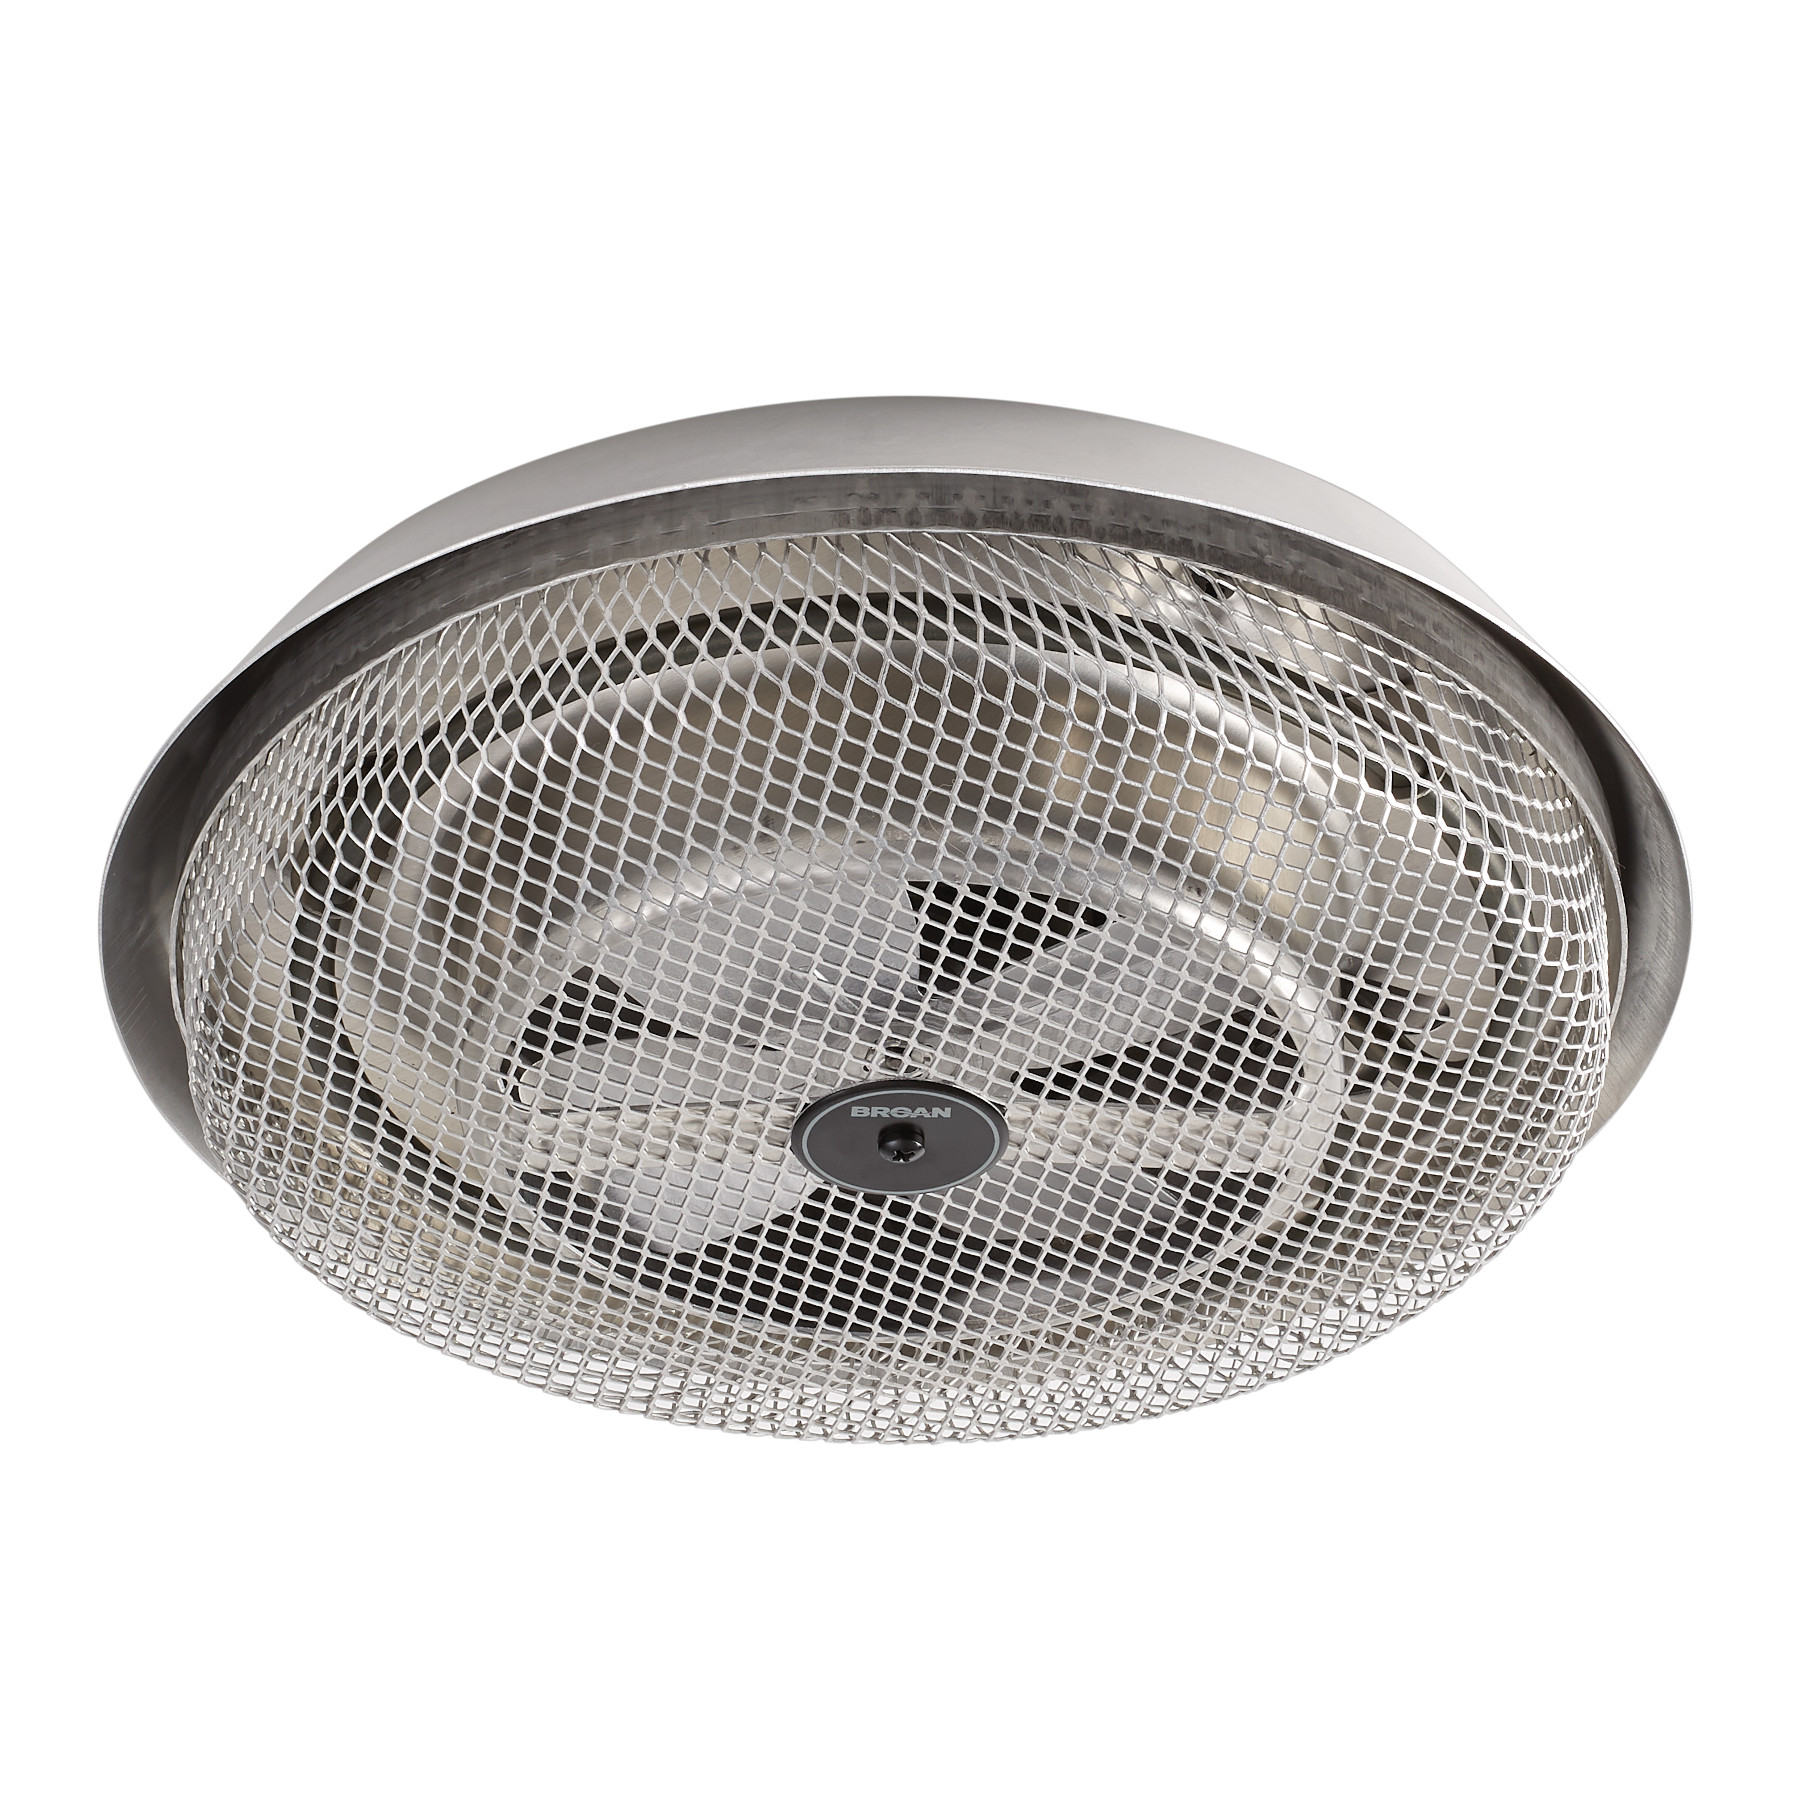 157 Broan Fan Forced Ceiling Heater